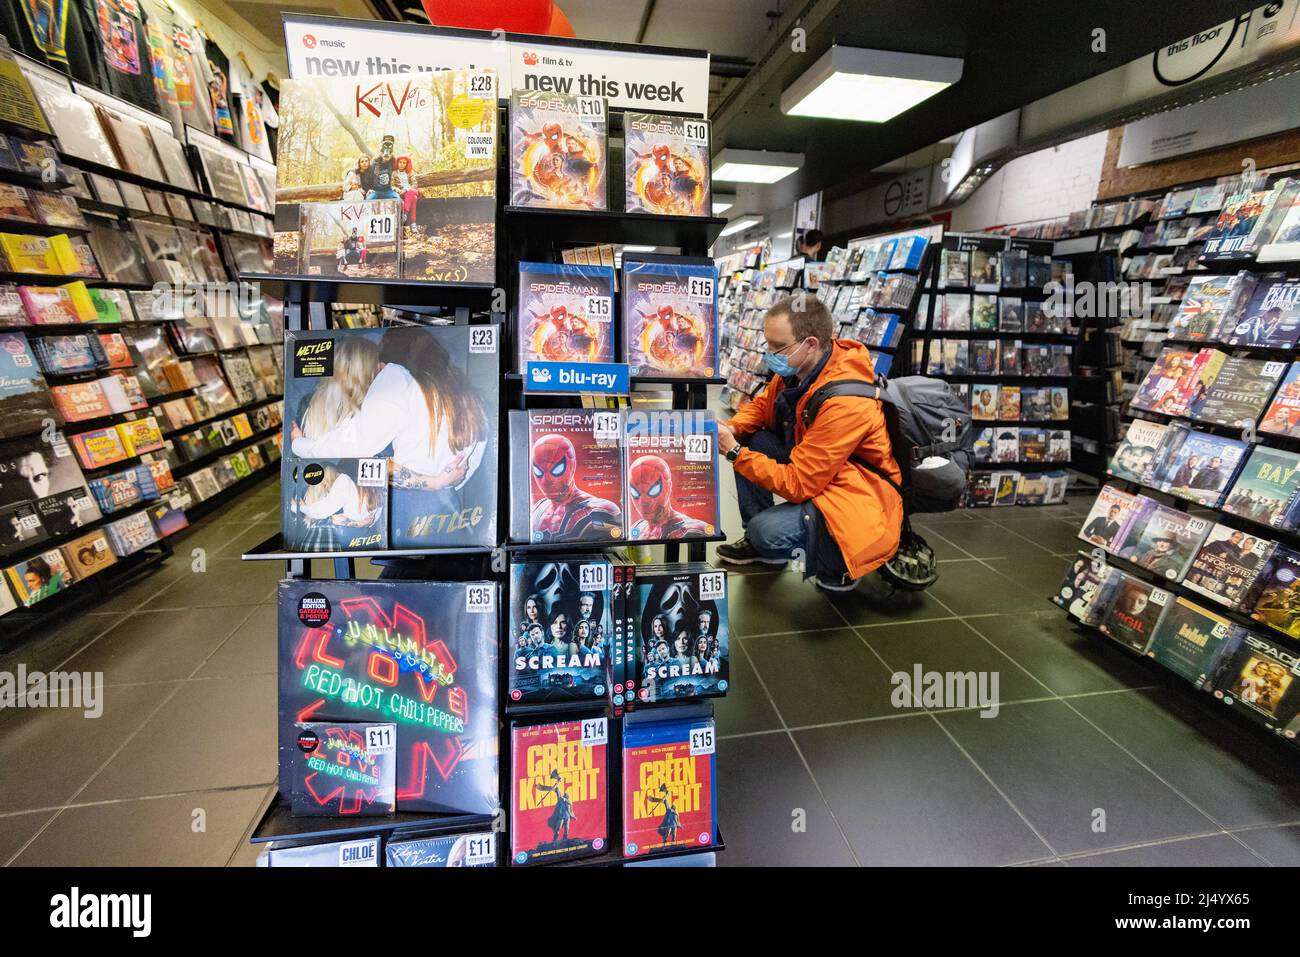 COVID shopping UK; Homme magasiner pendant la pandémie de COVID portant un masque et achetant des DVD à l'intérieur d'un magasin pendant la pandémie de COVID 19, Cambridge UK Banque D'Images